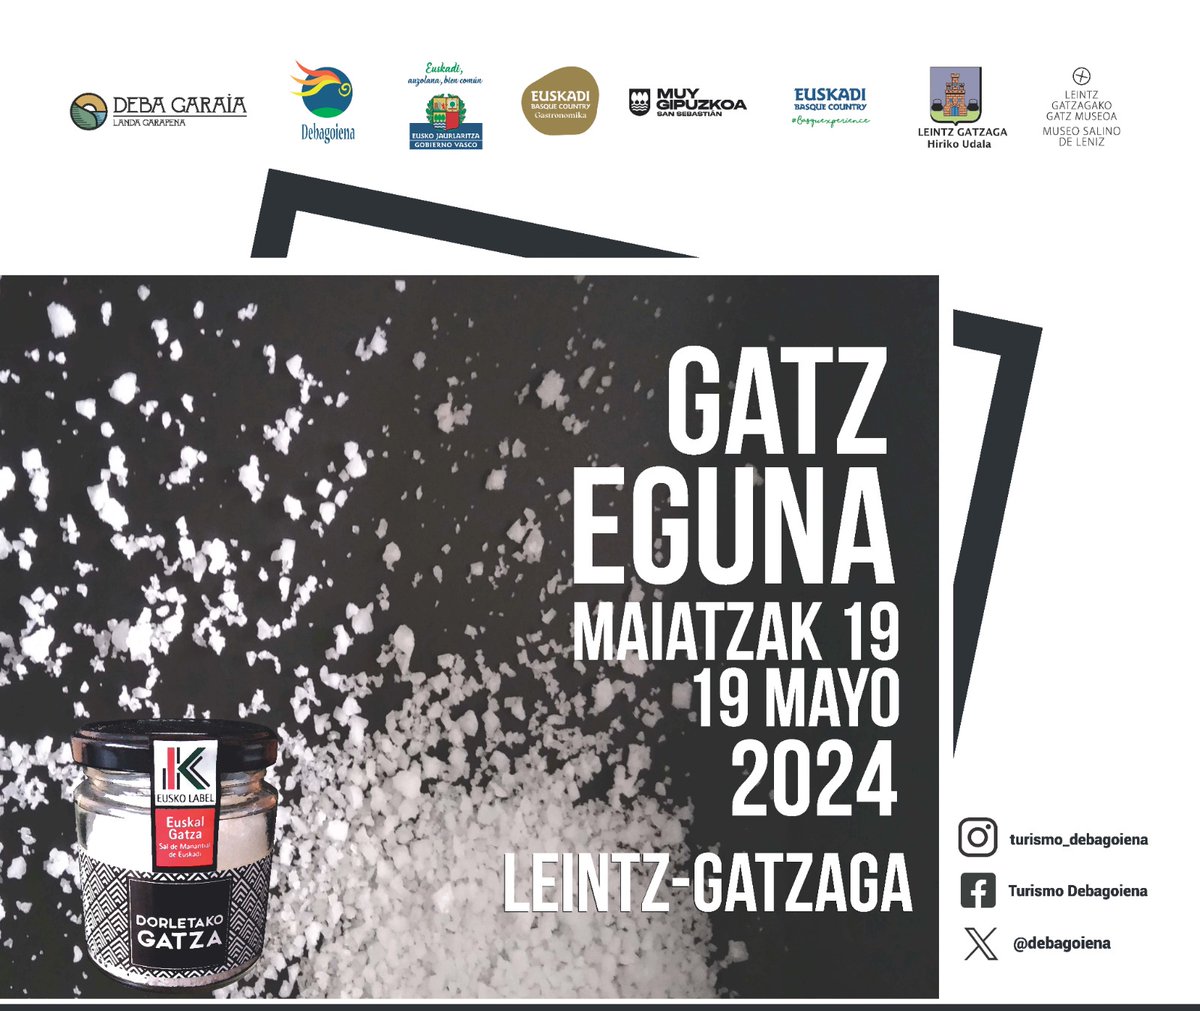 El Domingo 19 de Mayo se celebrará la Feria Especial de la Sal GATZ EGUNA en Leintz Gatzaga.
Entre otras actividades de realizará:
Reparto de plantas de TOMATE ARETXABALETA a partir de las 11:00
#landaeremuasustatuz
@gatzmuseoa @debagoiena